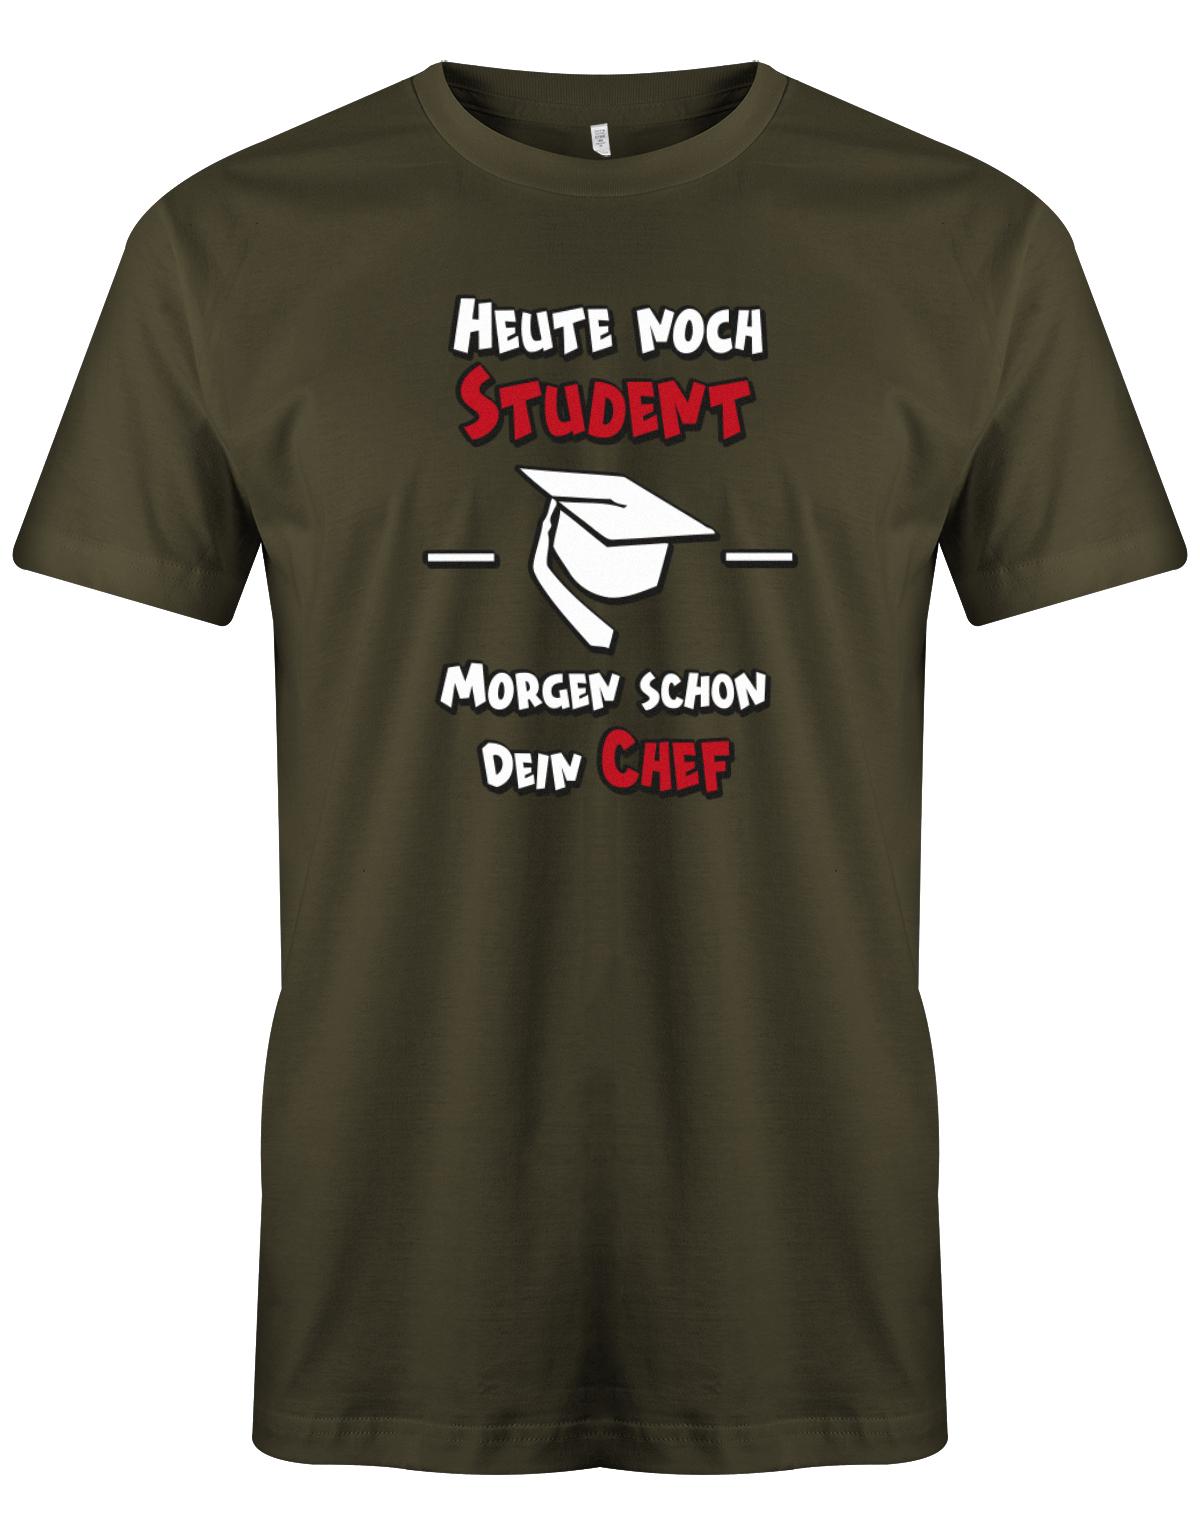 Heute-noch-Student-morgen-schon-dein-Chef-Herren-Studium-Shirt-Army